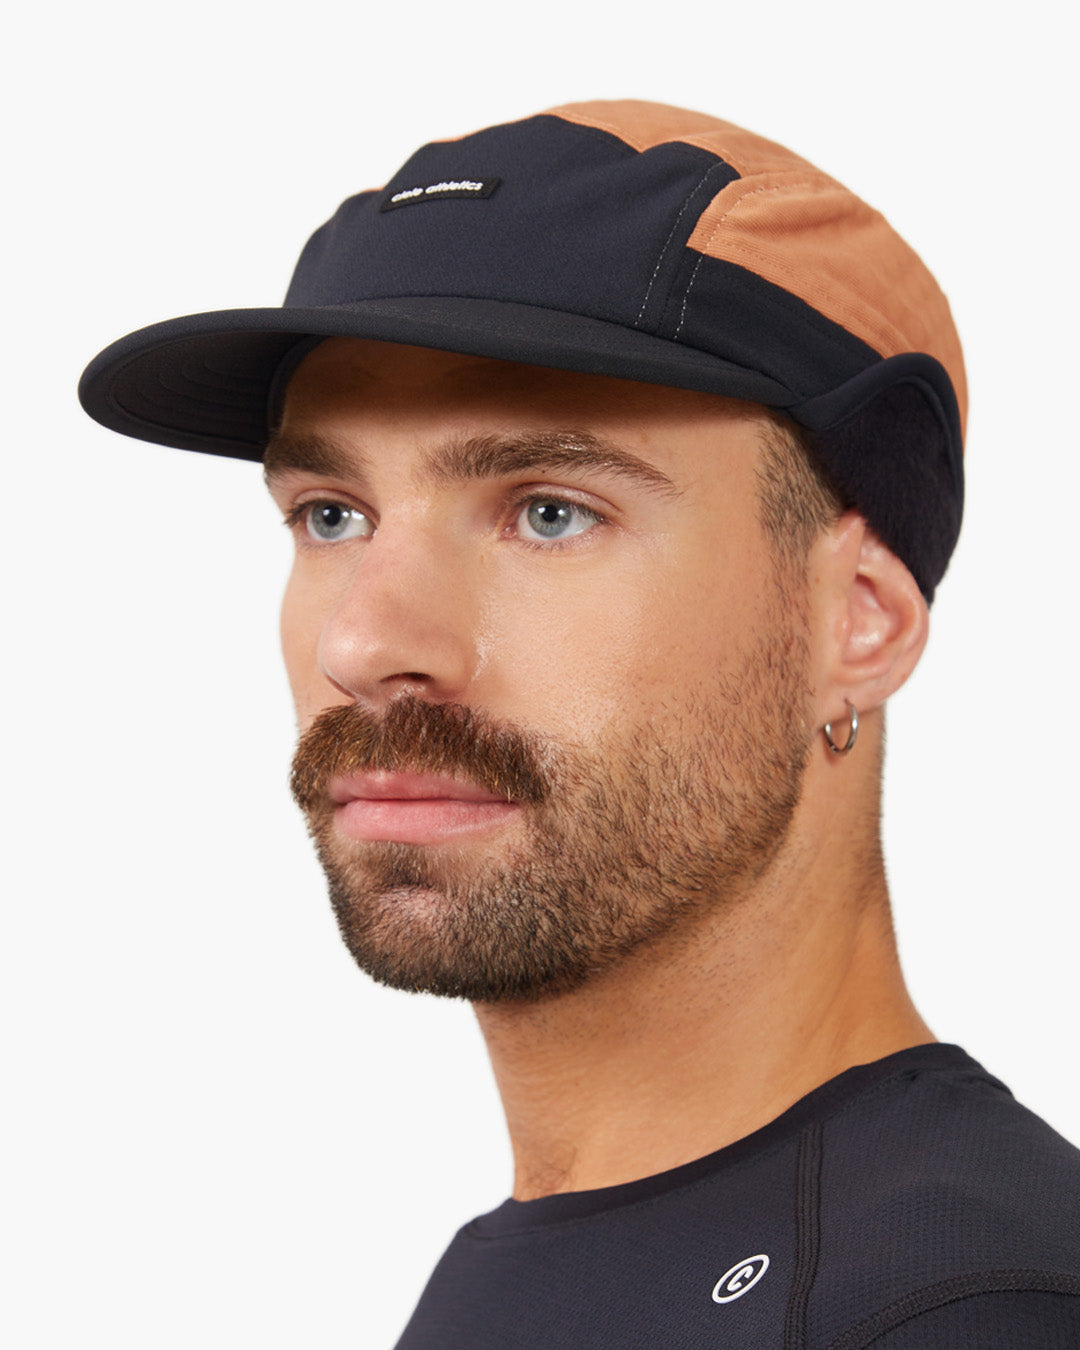 Bleach Cap - Baseball Caps - Aliexpress - Shop online for bleach cap